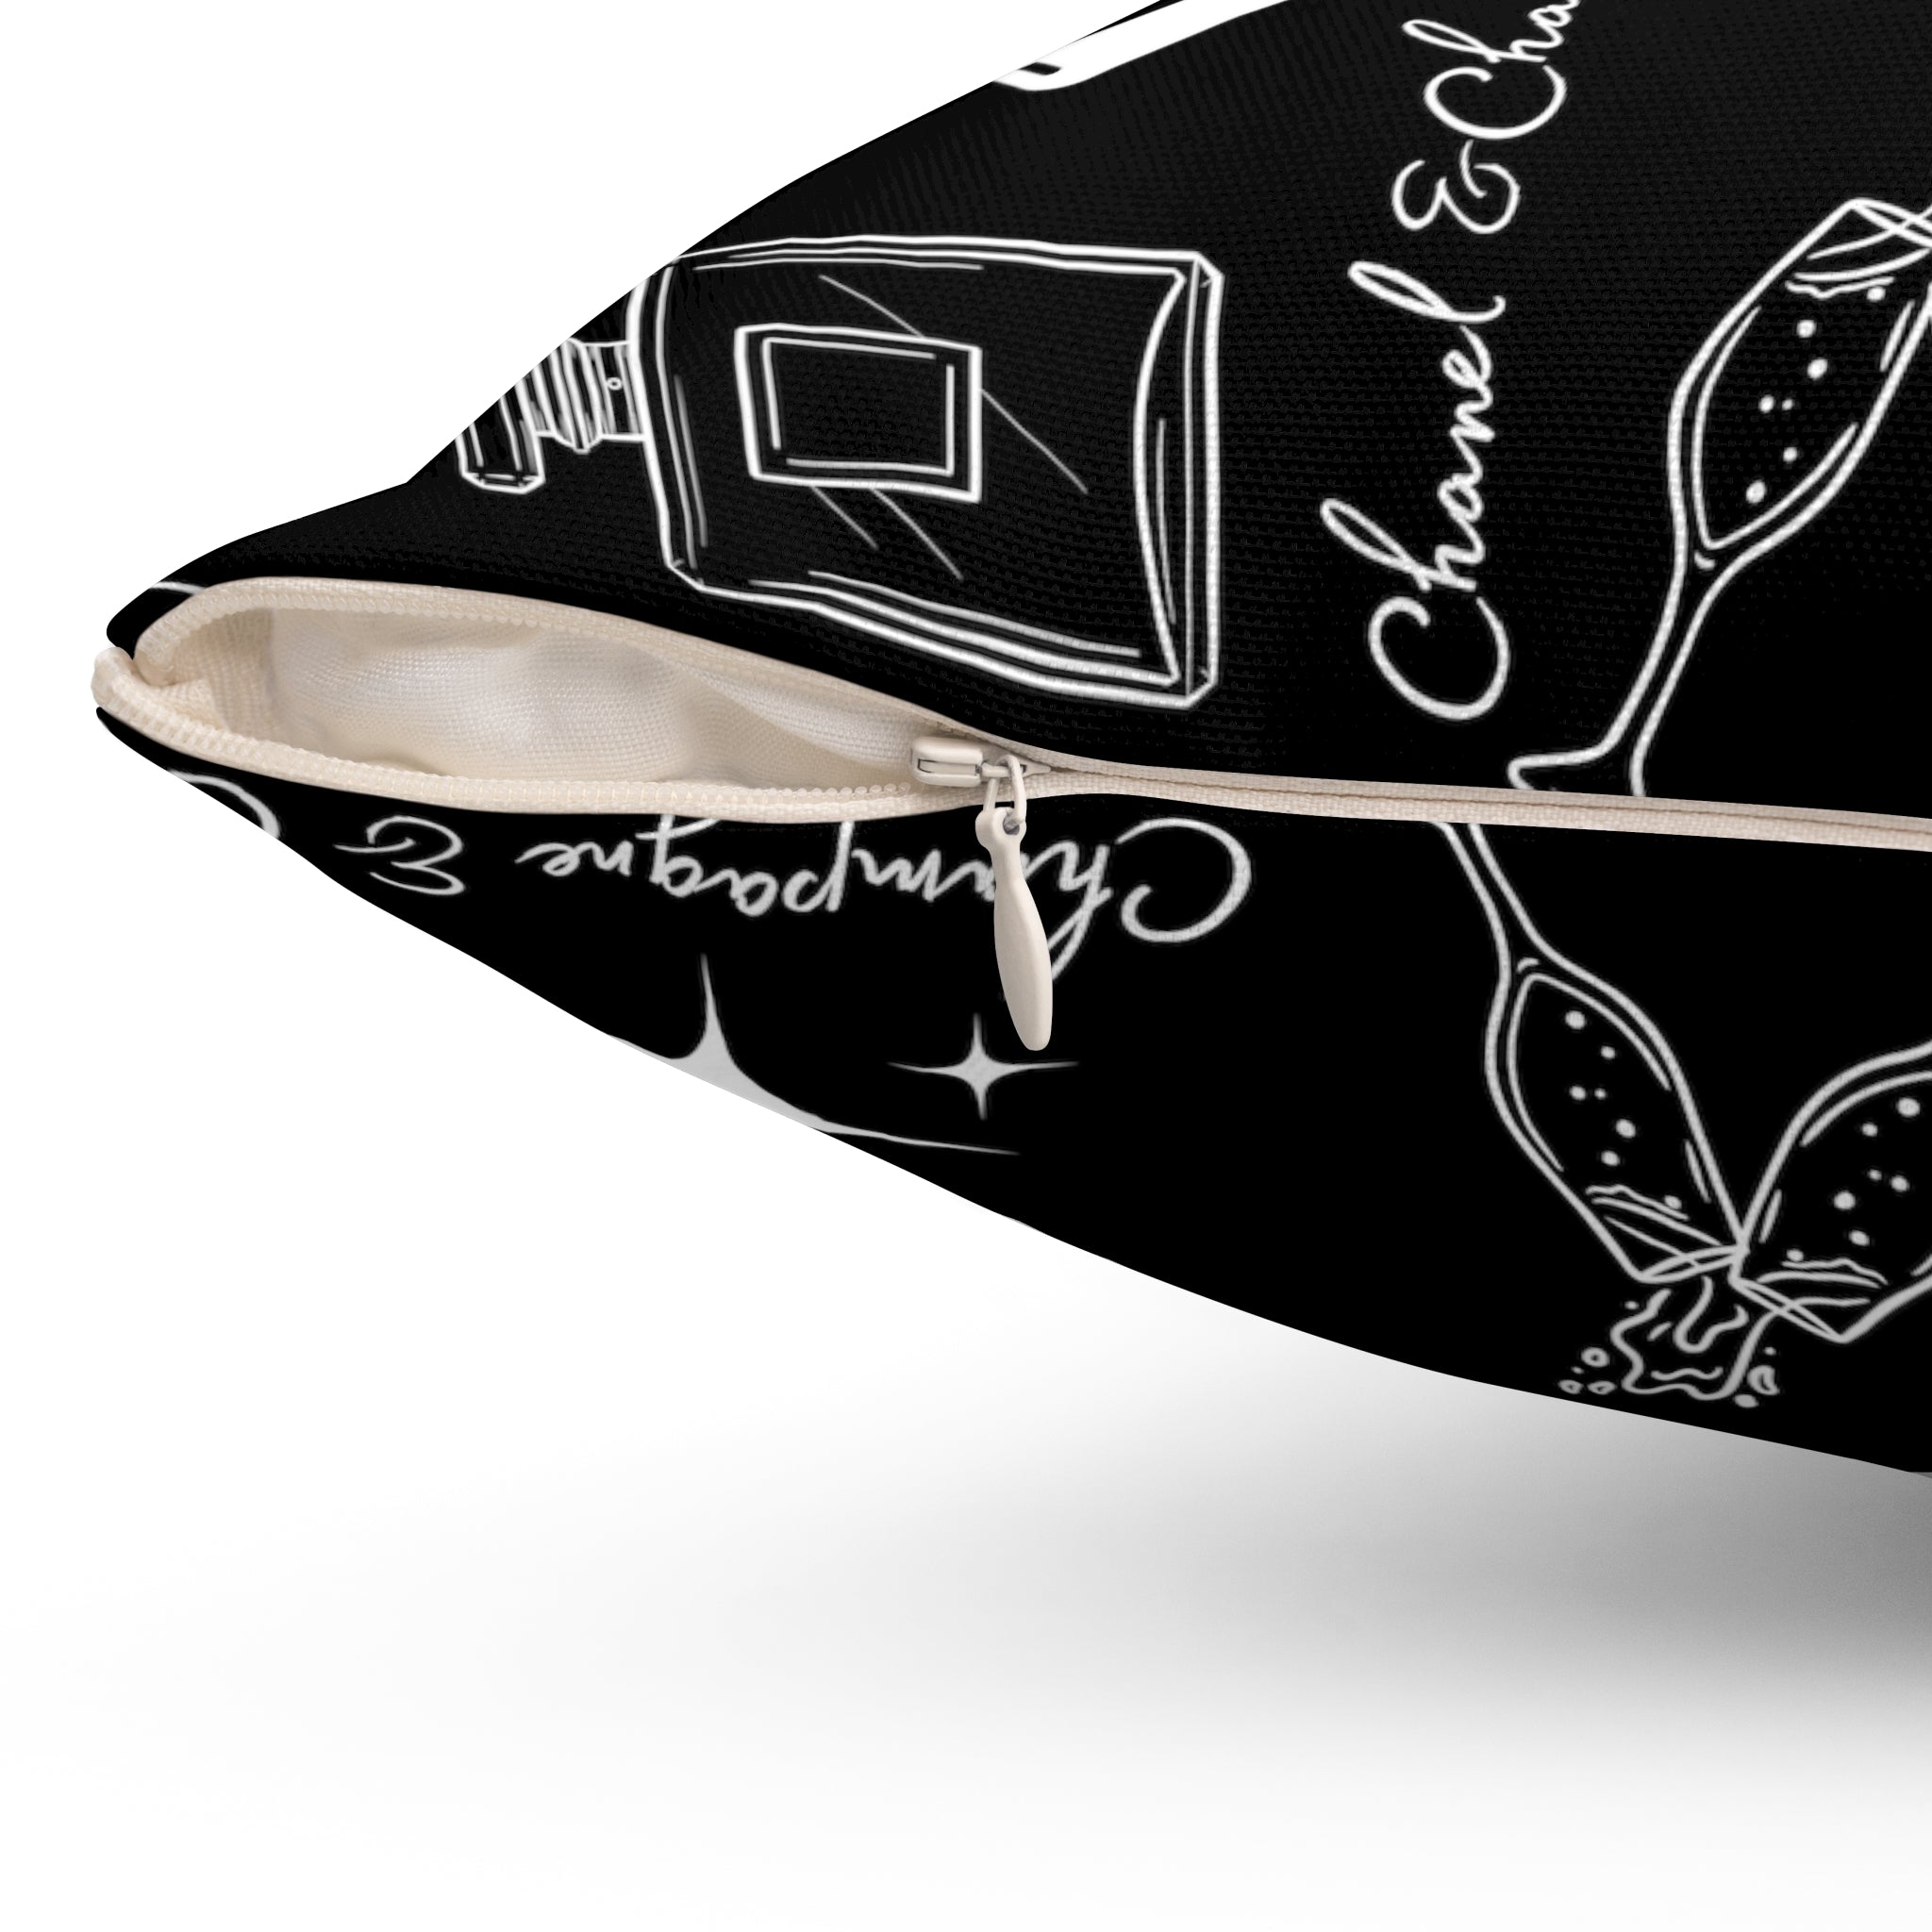 Champagne & Chanel Spun Polyester Square Pillow BLACK